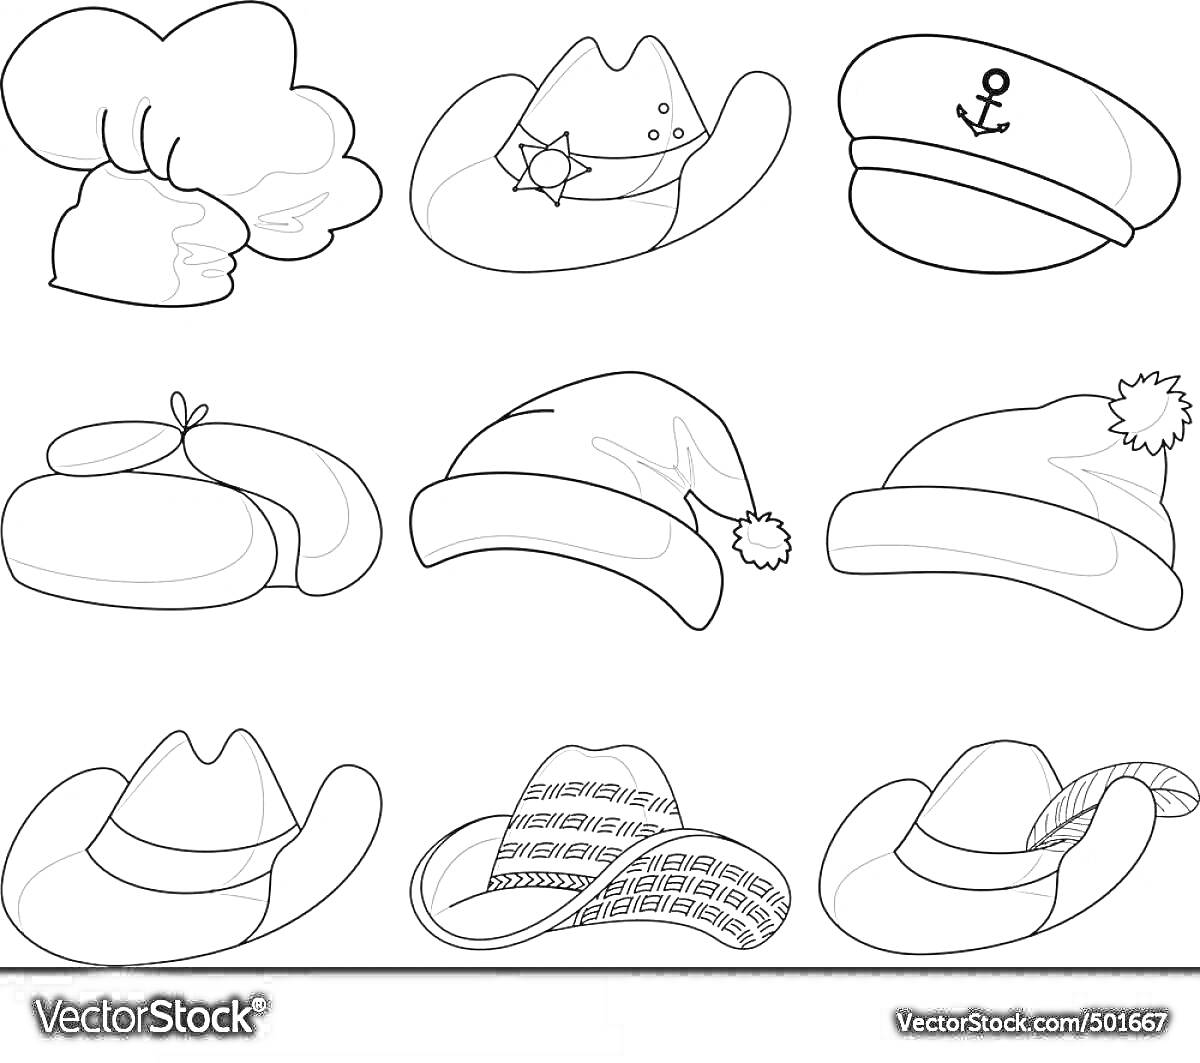 Раскраска Раскраска головные уборы для детей: поварской колпак, ковбойская шляпа со звездой, морская фуражка с якорем, берет с помпоном, шапка Санты, зимняя шапка с помпоном, ковбойская шляпа, шляпа с узором, шляпа с бантом